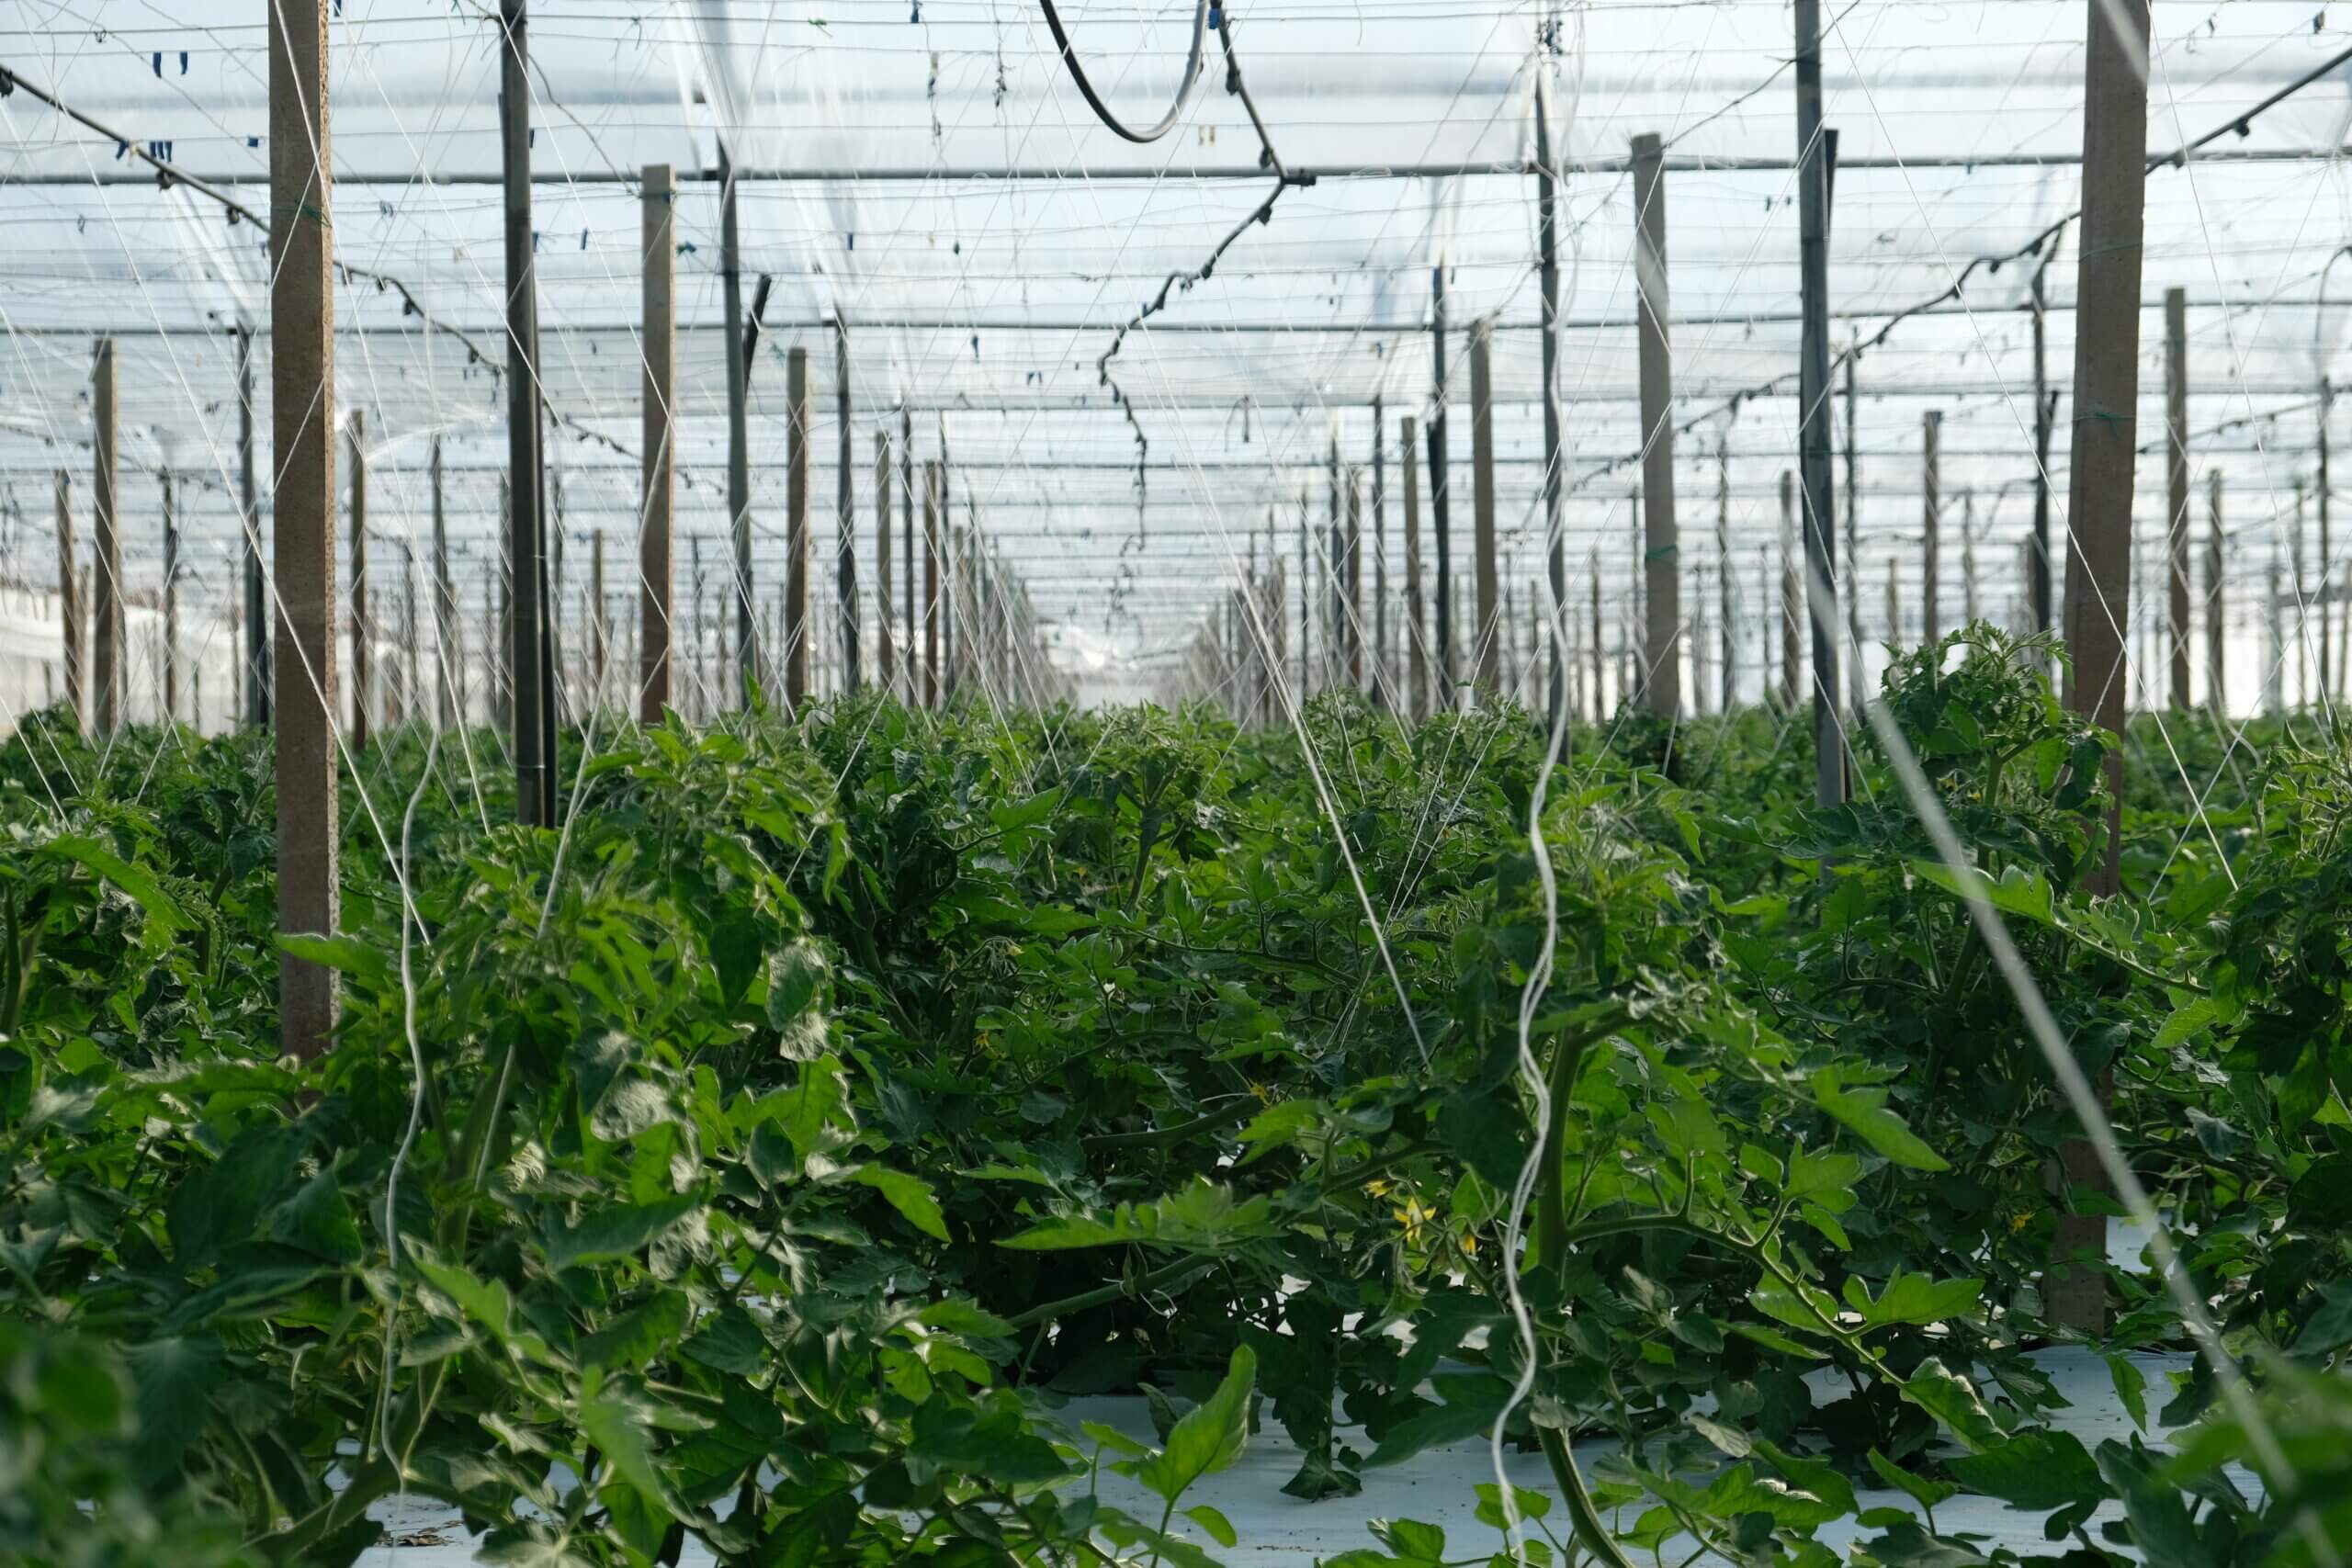 Serra e produzione di pomodori semisecchi - Pomup sicilia